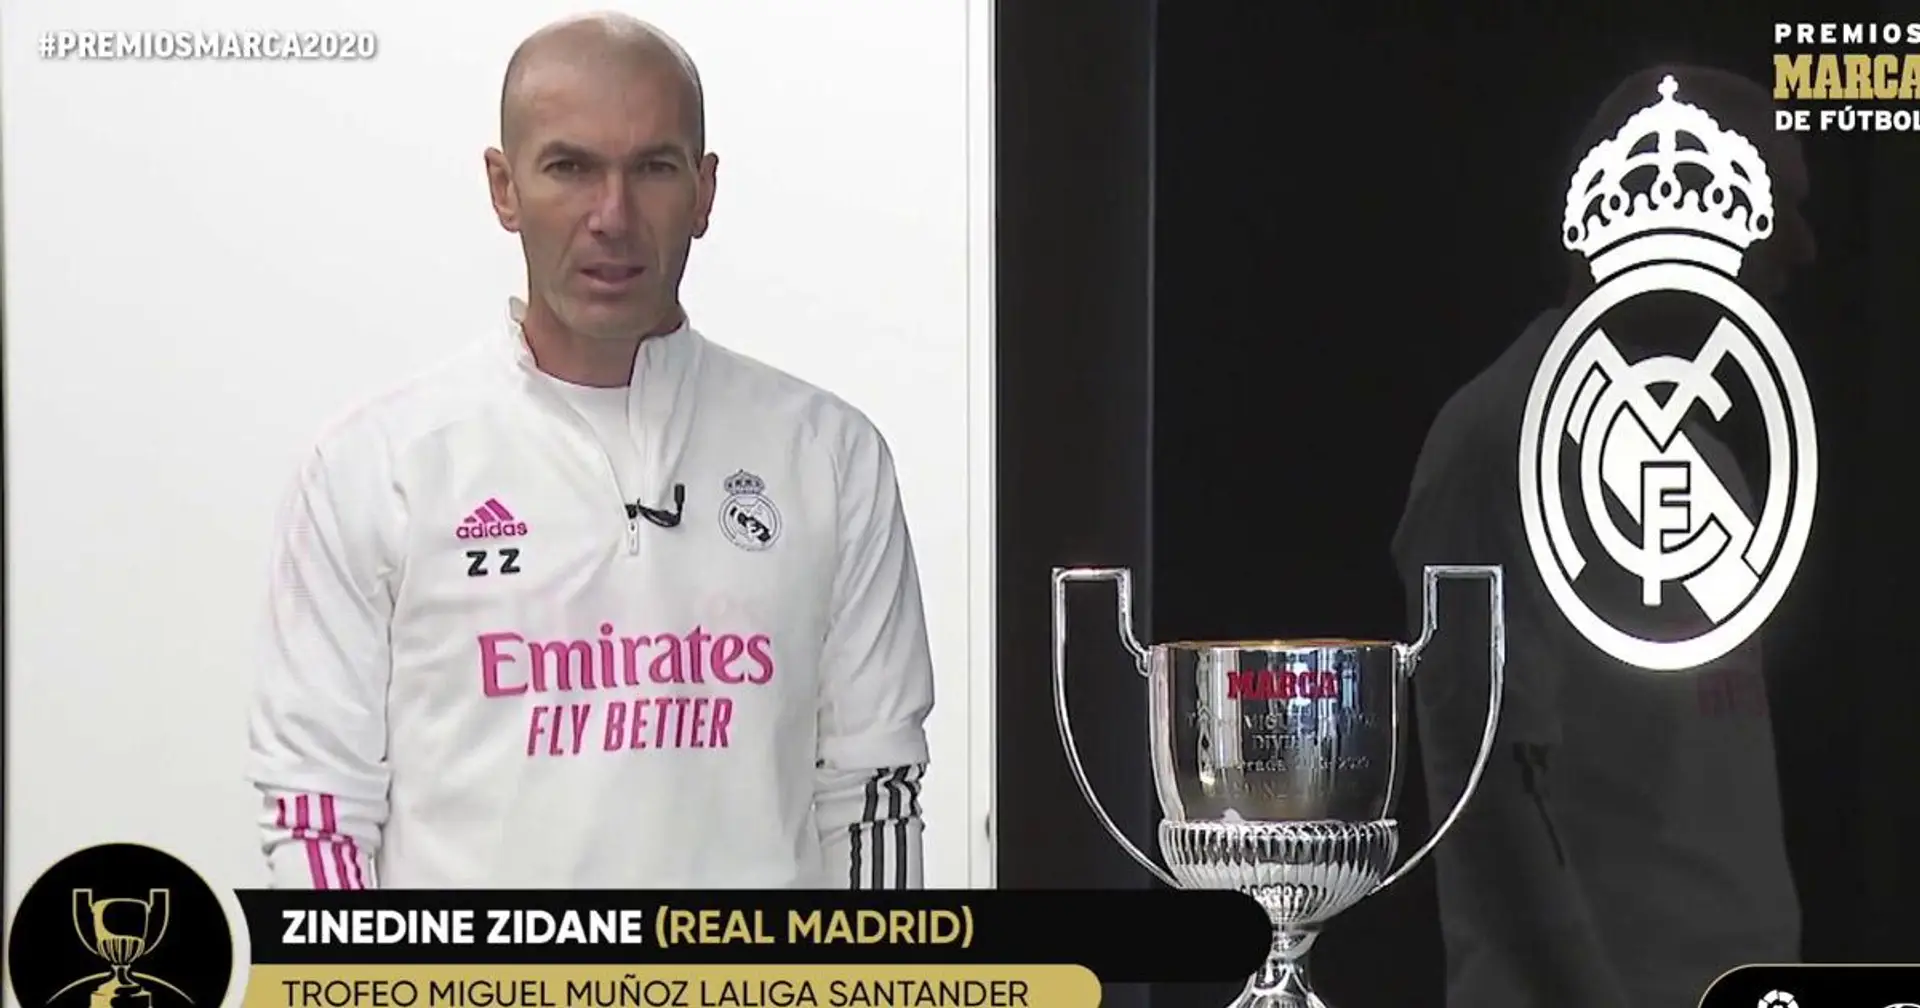 يتقاسم زيدان جائزة أفضل مدرب في الدوري الإسباني مع لوبيتيغي مدرب إشبيلية